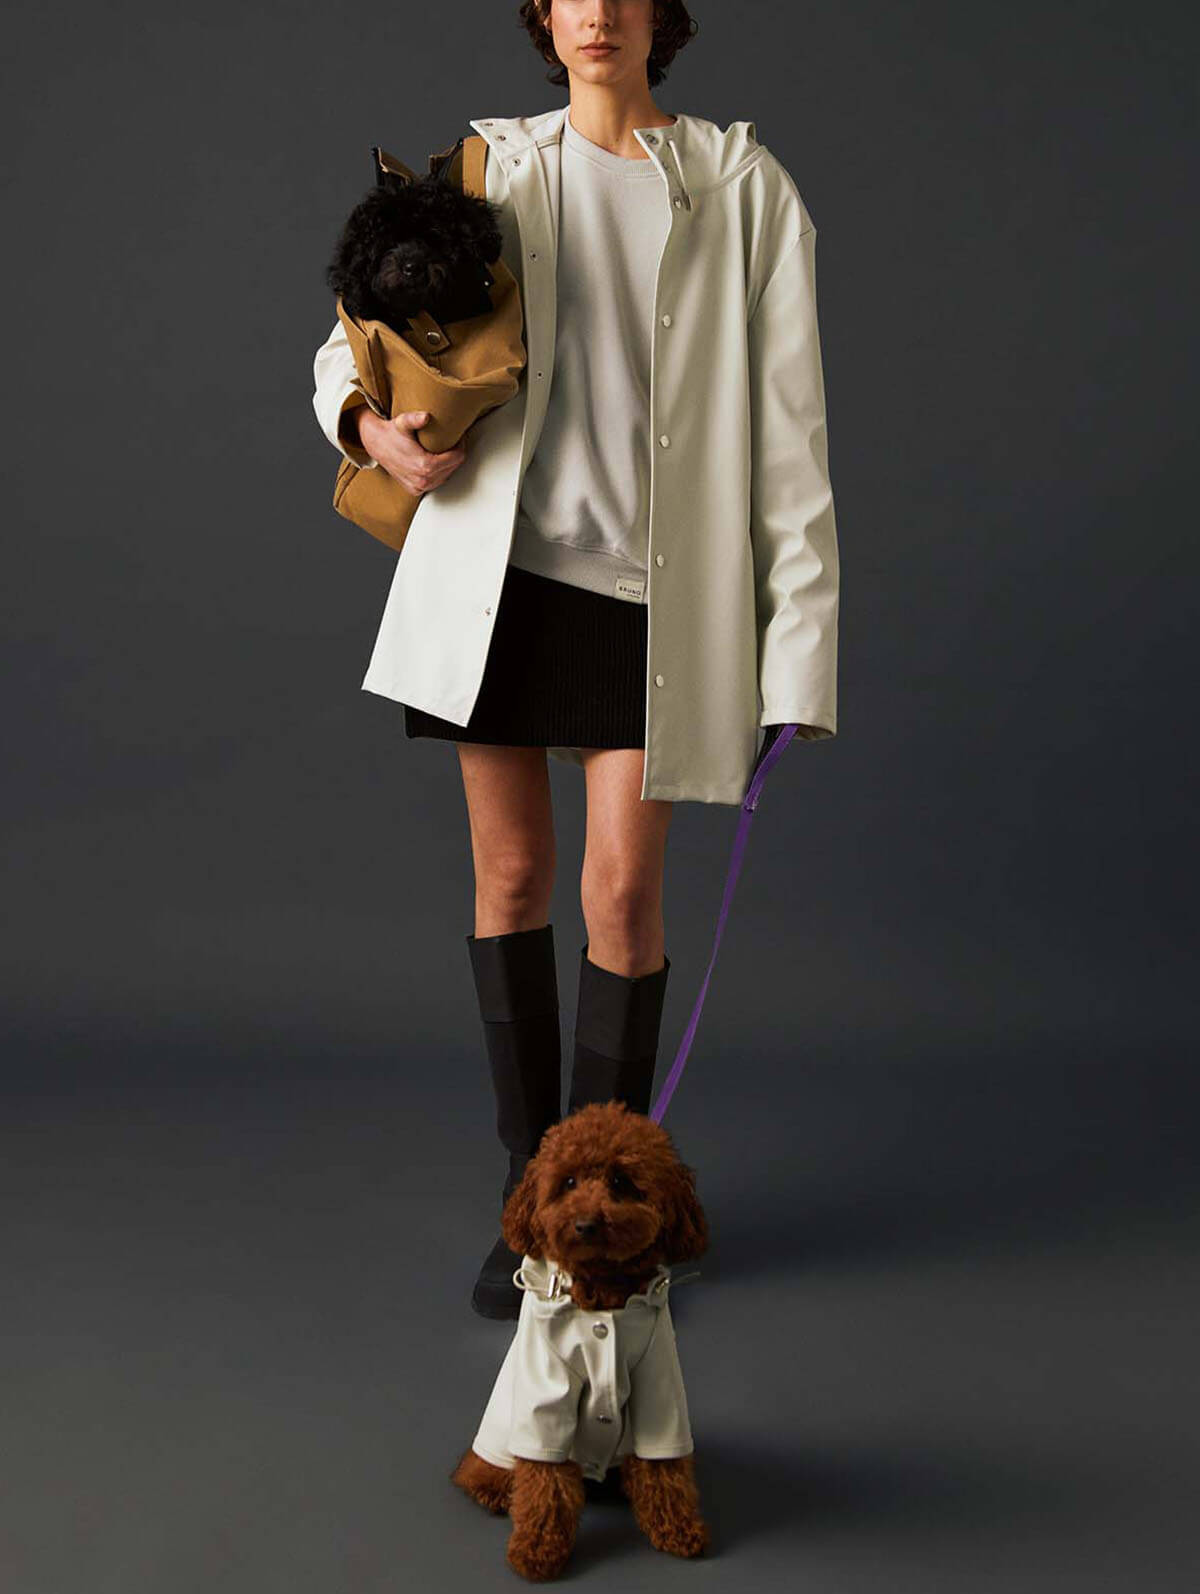 Bruno Society Dog Raincoat